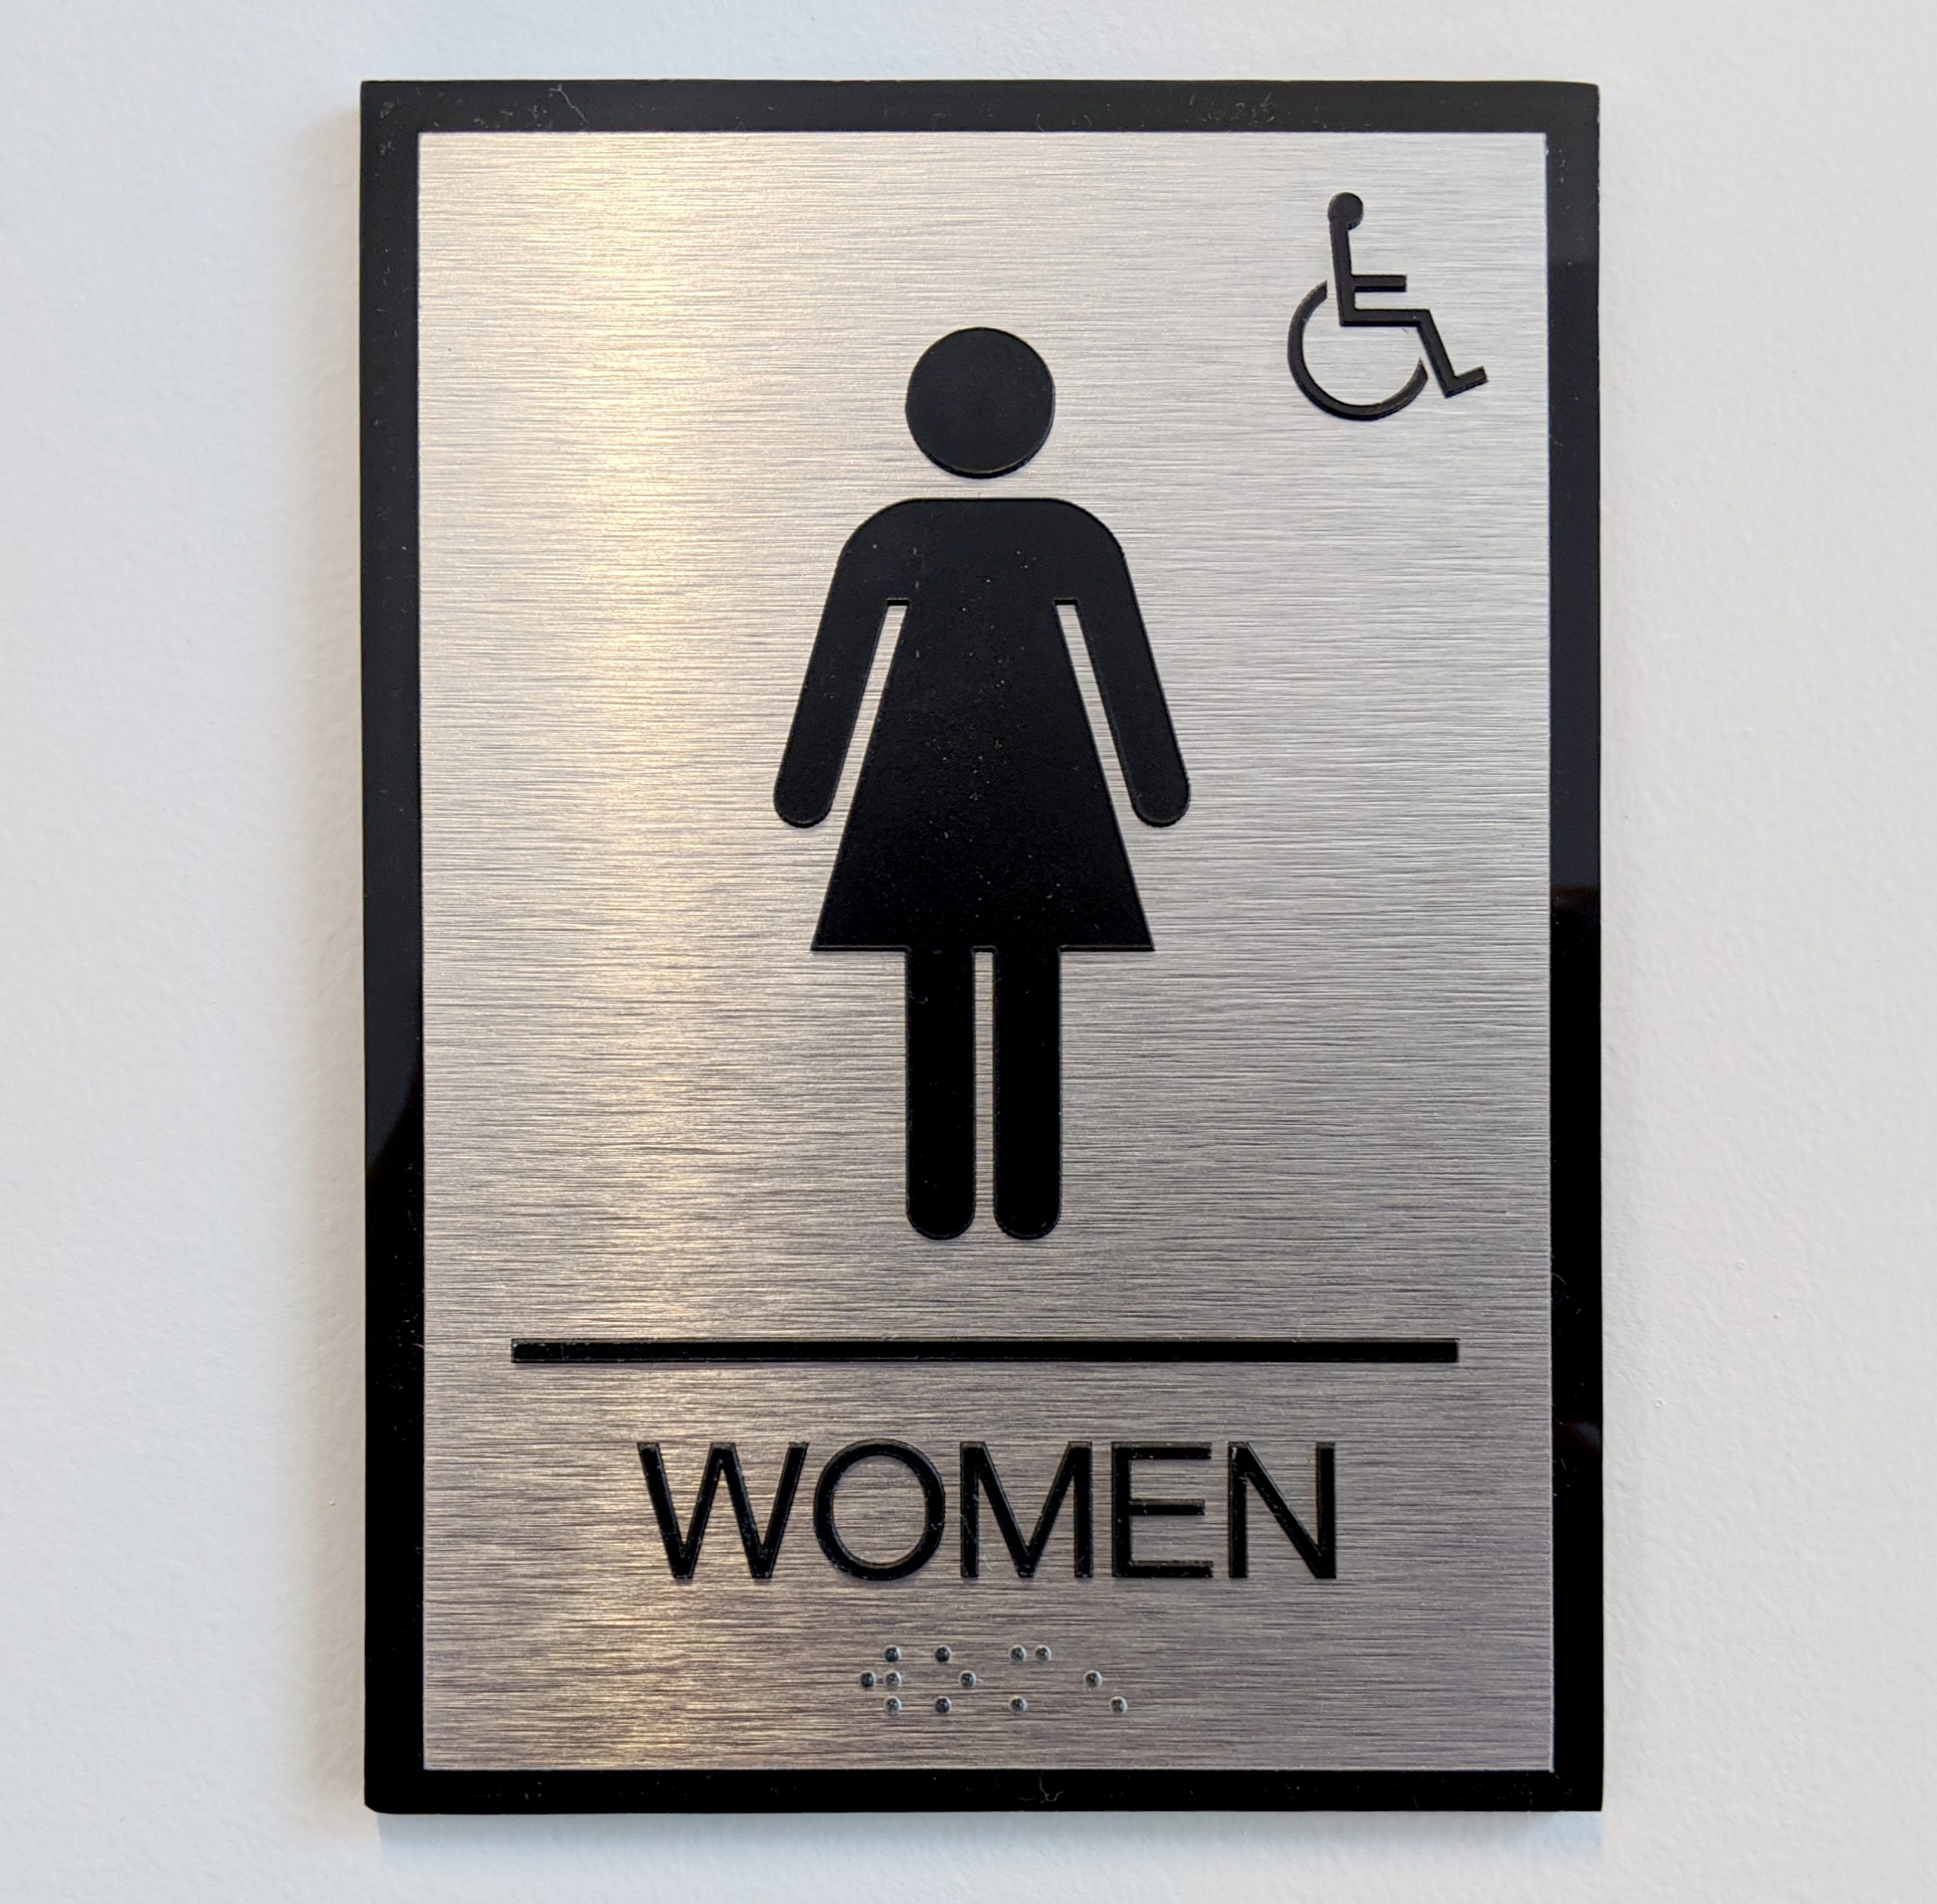 ADA women's room bathroom signage brushed aluminum